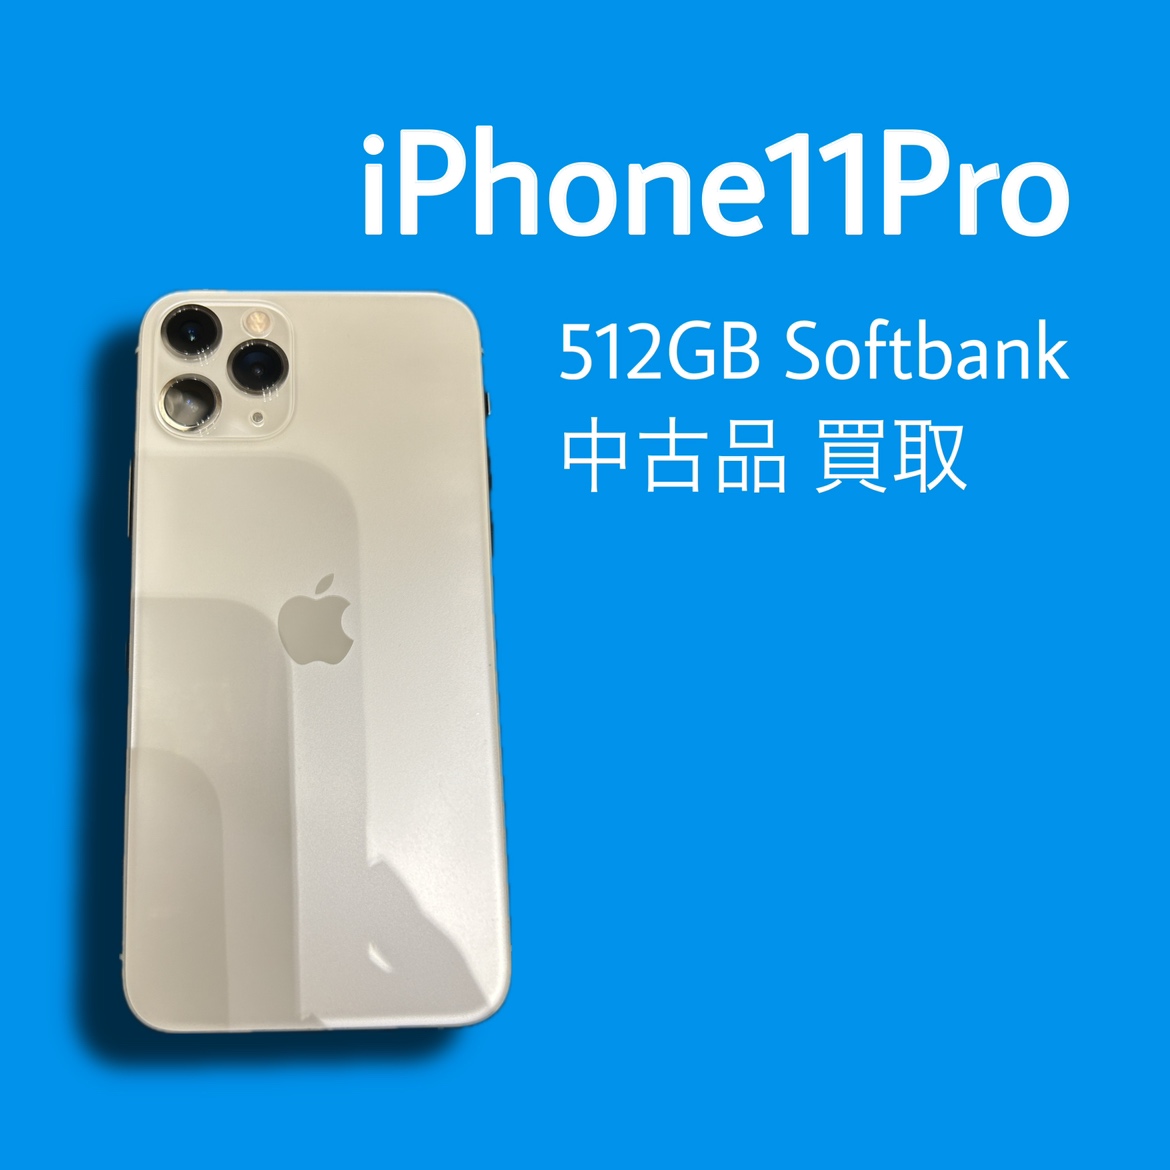 iPhone11Pro・512GB・Softbank・〇・中古品【天神地下街店】